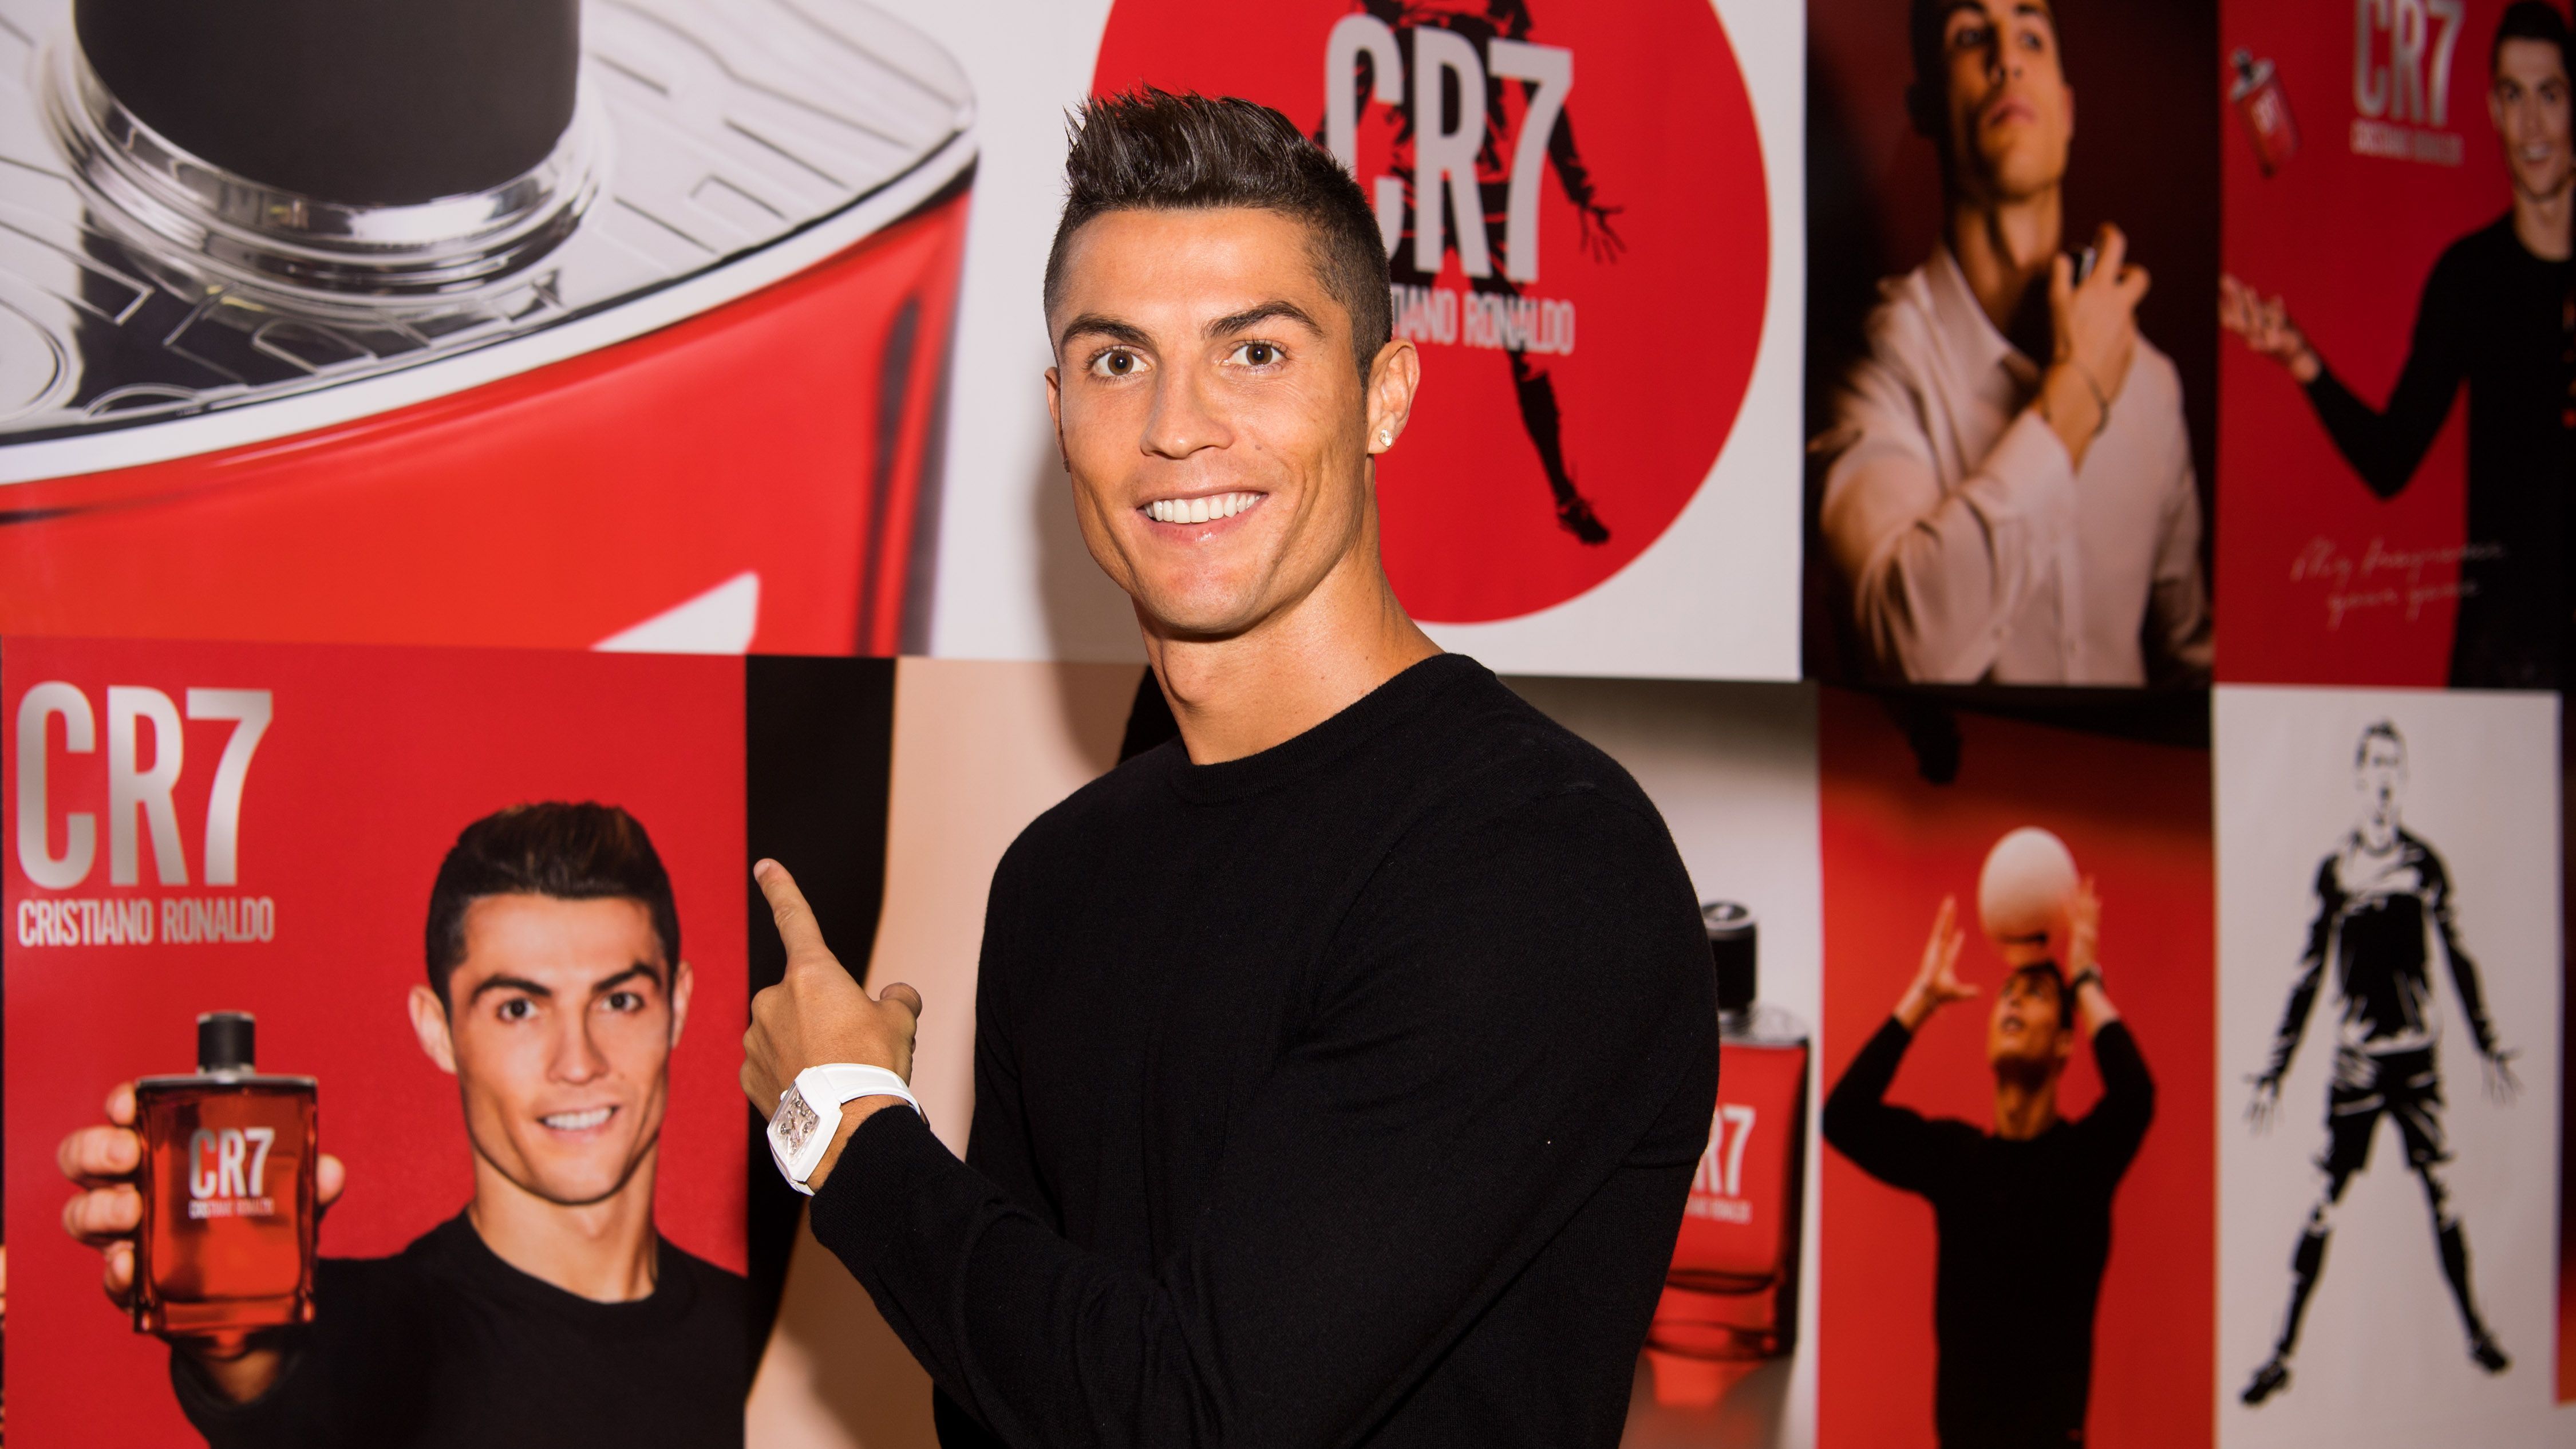 <strong>Cristiano Ronaldo</strong><br>Als König des Marketings vermarktet Cristiano Ronaldo eigentlich alles, was man vermarkten kann: Von Parfüm, über eine Unterwäsche- und Men’s Wear-Kollektion, bis hin zu einer eigenen Hotelkette - alles läuft unter der Marke "CR7". Nebenbei ist er Museumsgründer. Im Dezember 2013 eröffnete Ronaldo in seiner Heimat Funchal auf Madeira das eigenes Museum.